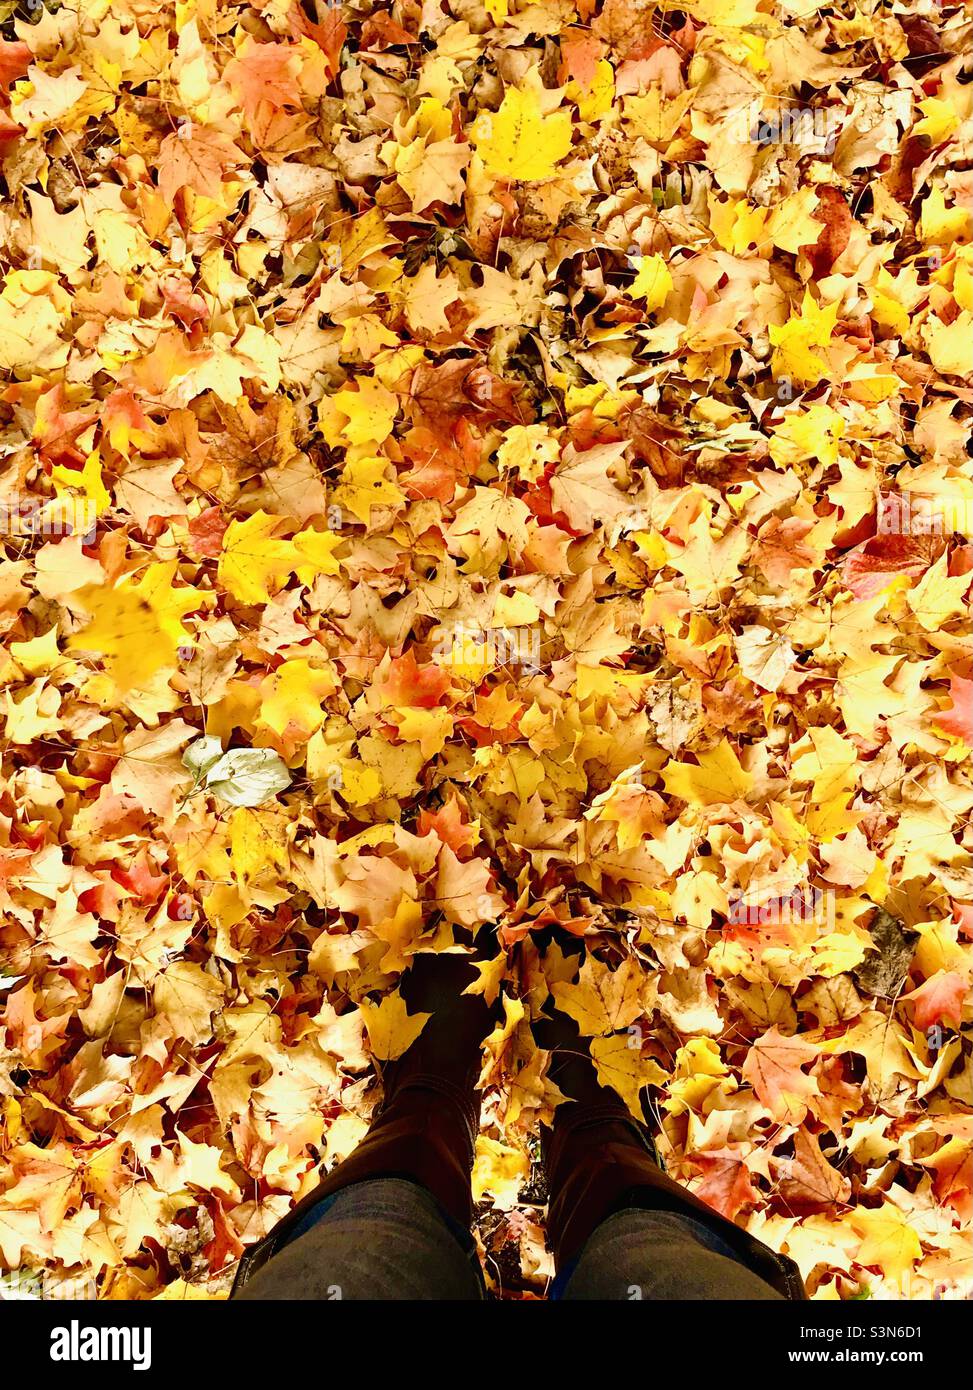 Frau in Stiefeln, die auf einem Haufen herbstlicher Blätter steht Stockfoto